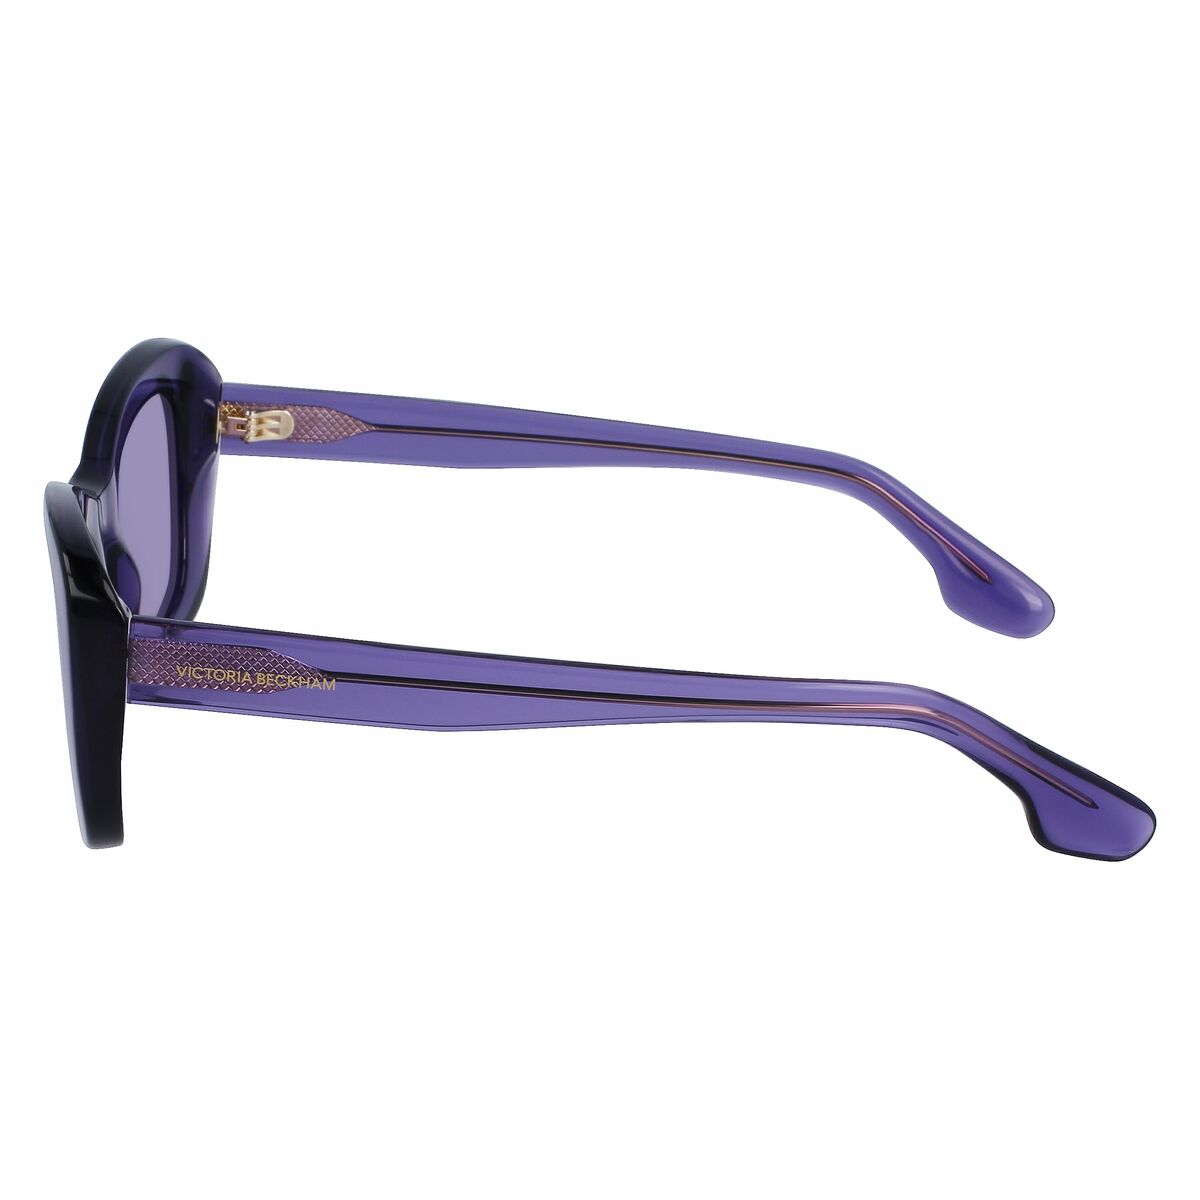 Kaufe Damensonnenbrille Victoria Beckham VB657S-514 Ø 50 mm bei AWK Flagship um € 115.00